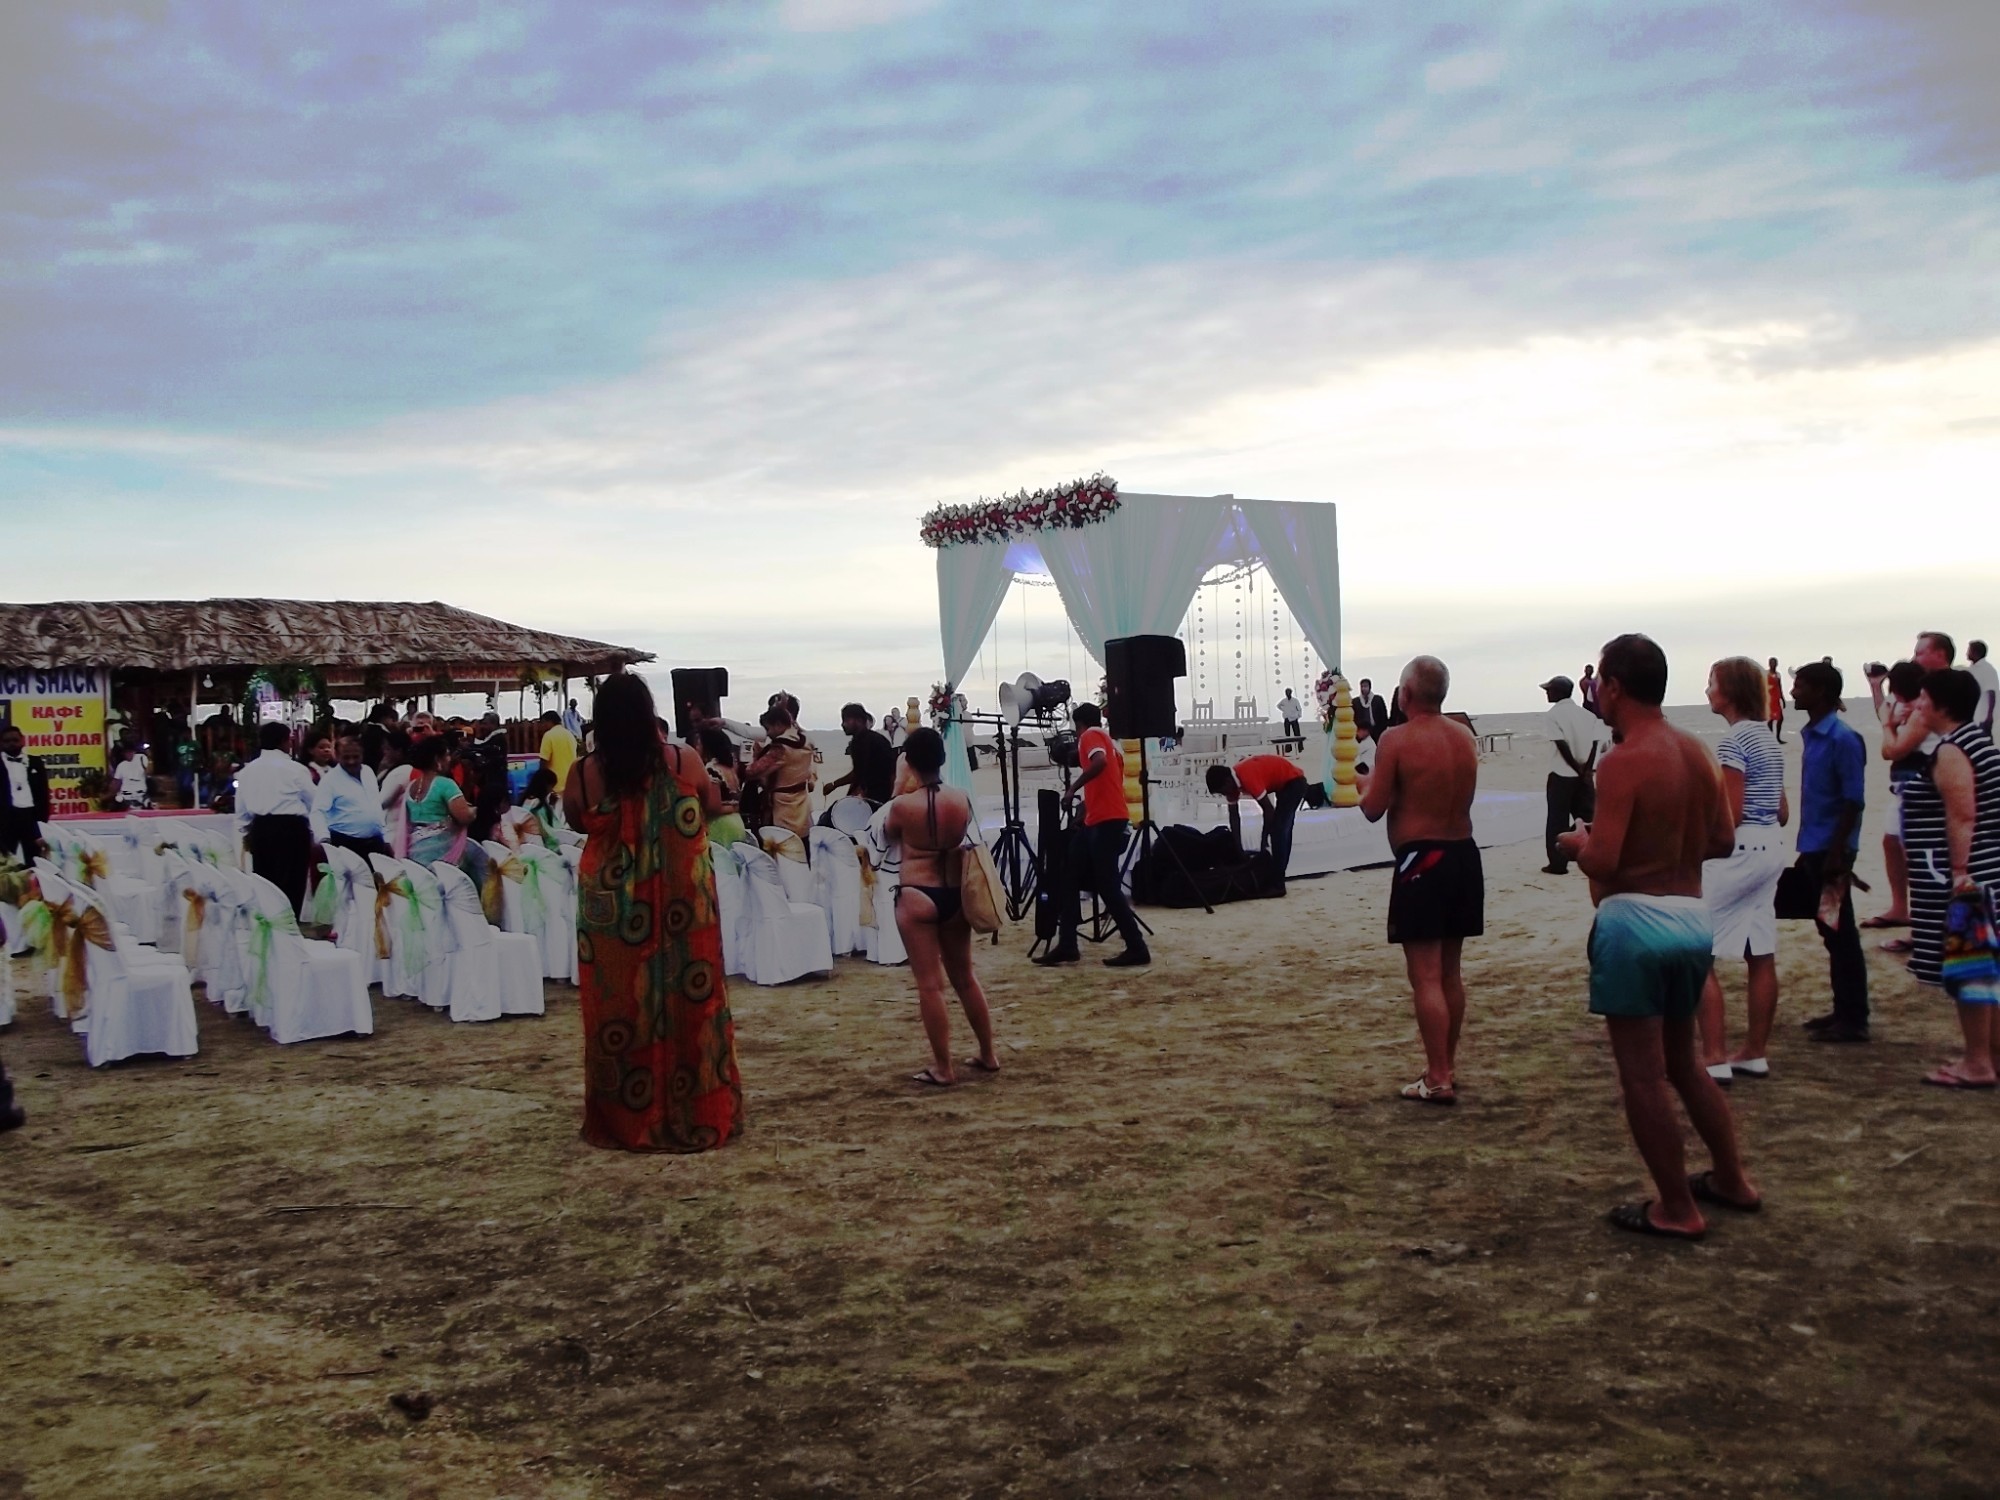 Пляж Кавелоссим <br/>
Cavelossim Beach<br/>
Индийская свадьба